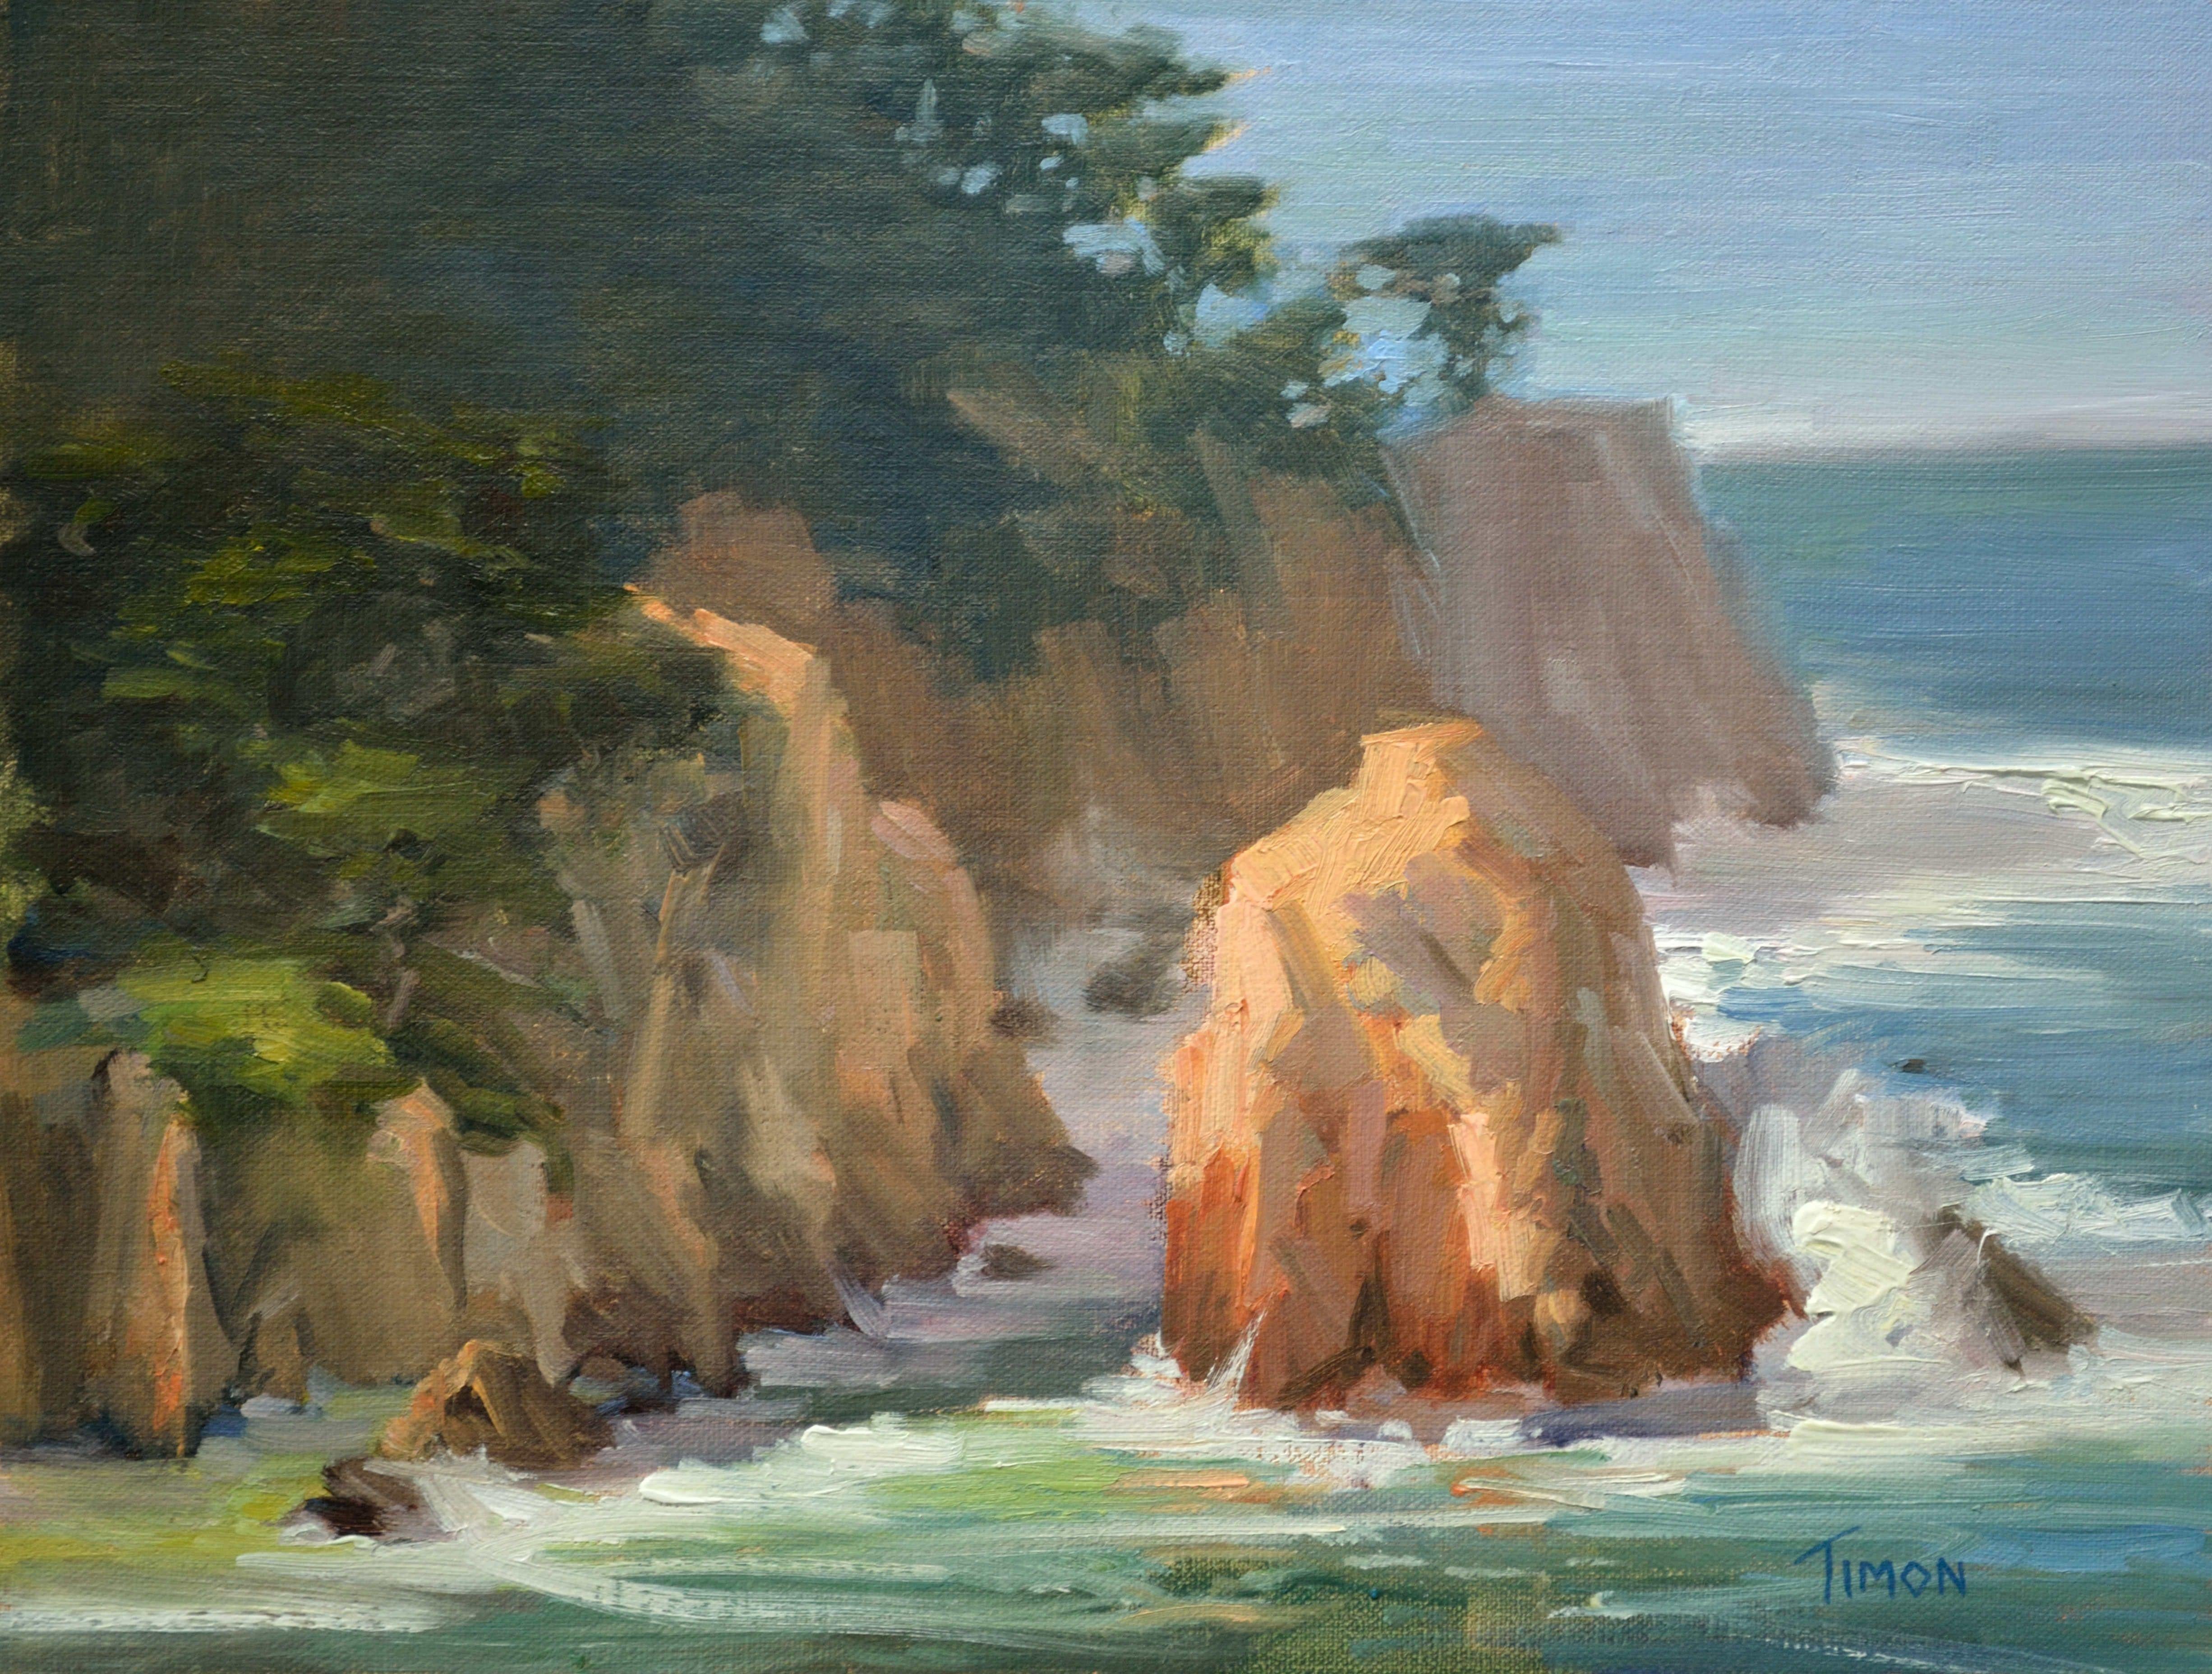 Peinture, huile sur toile, matin de Point Lobos - Painting de Timon Sloane